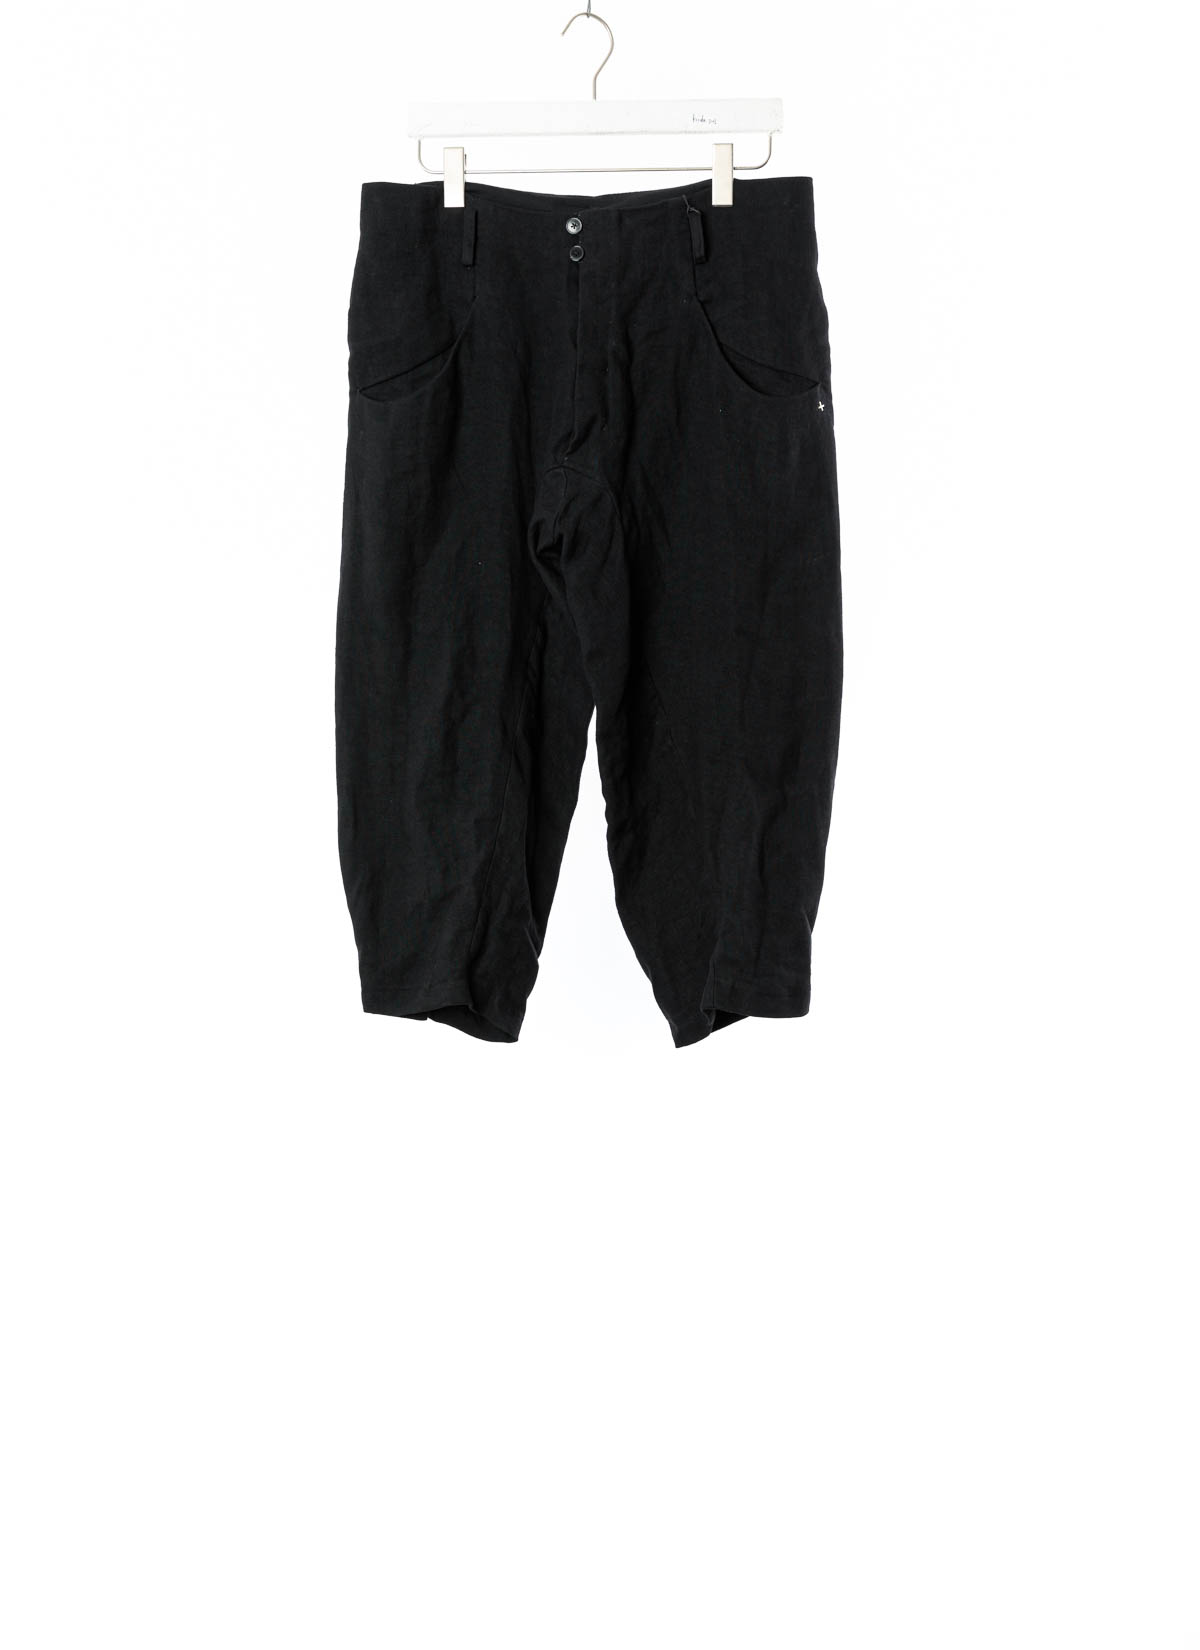 hide-m | M.A+ Men Pinched 4 Pocket Short Pants P455C, black